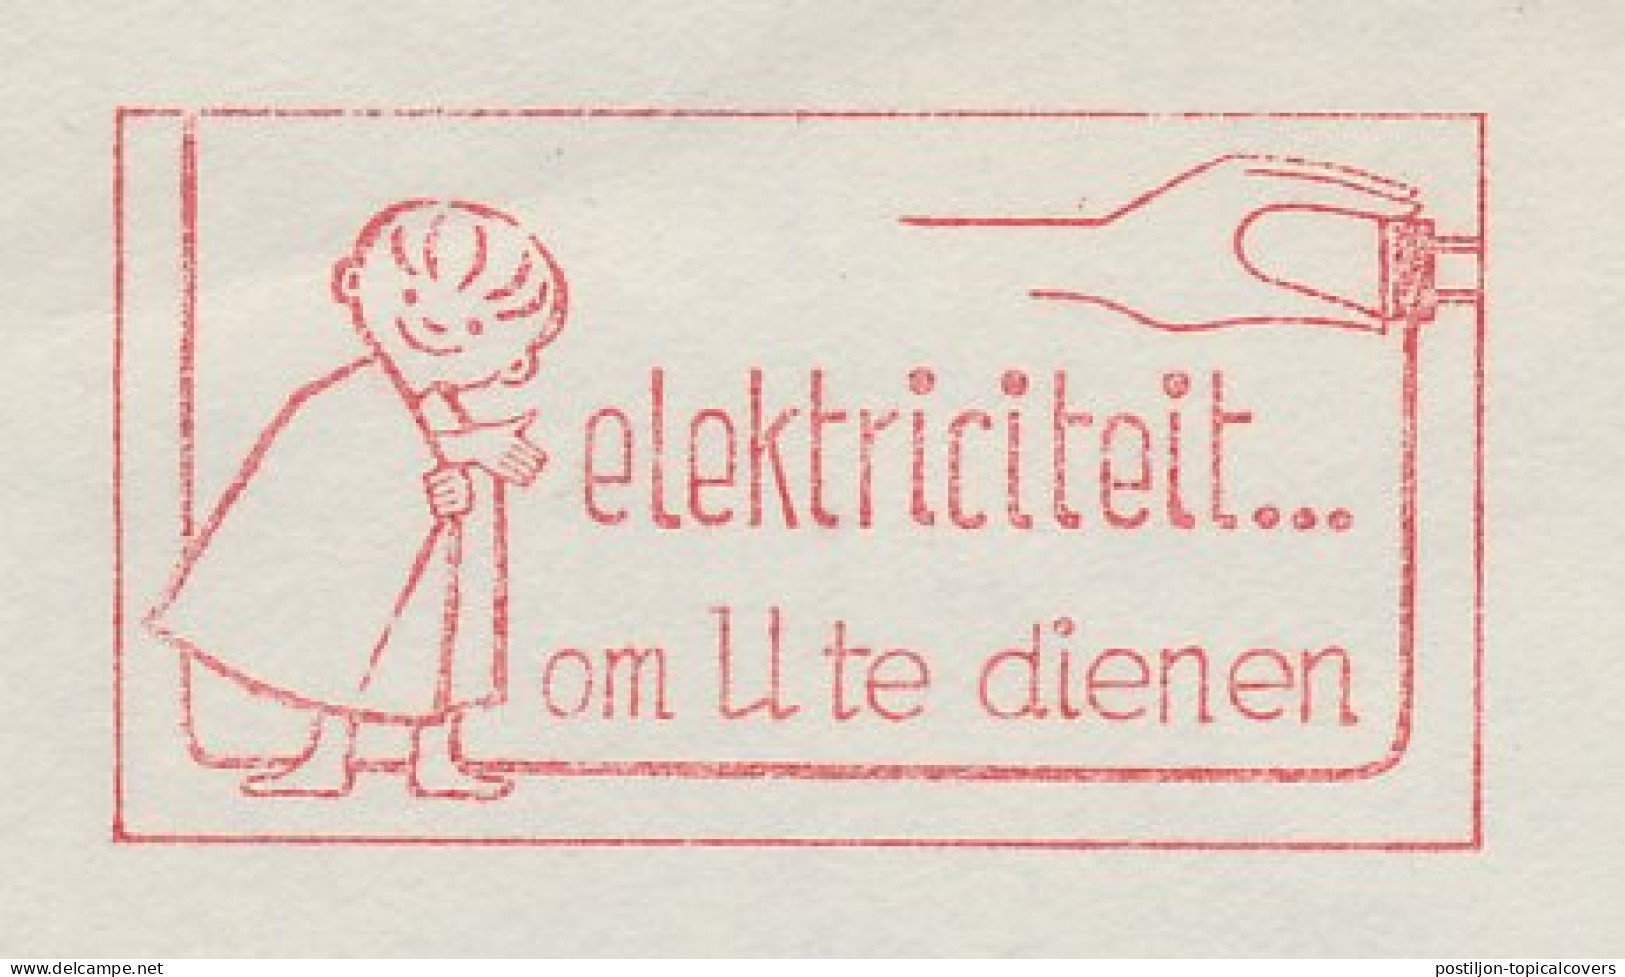 Meter Cover Netherlands 1962 Electricity ... To Serve You - Middelburg - Elektriciteit